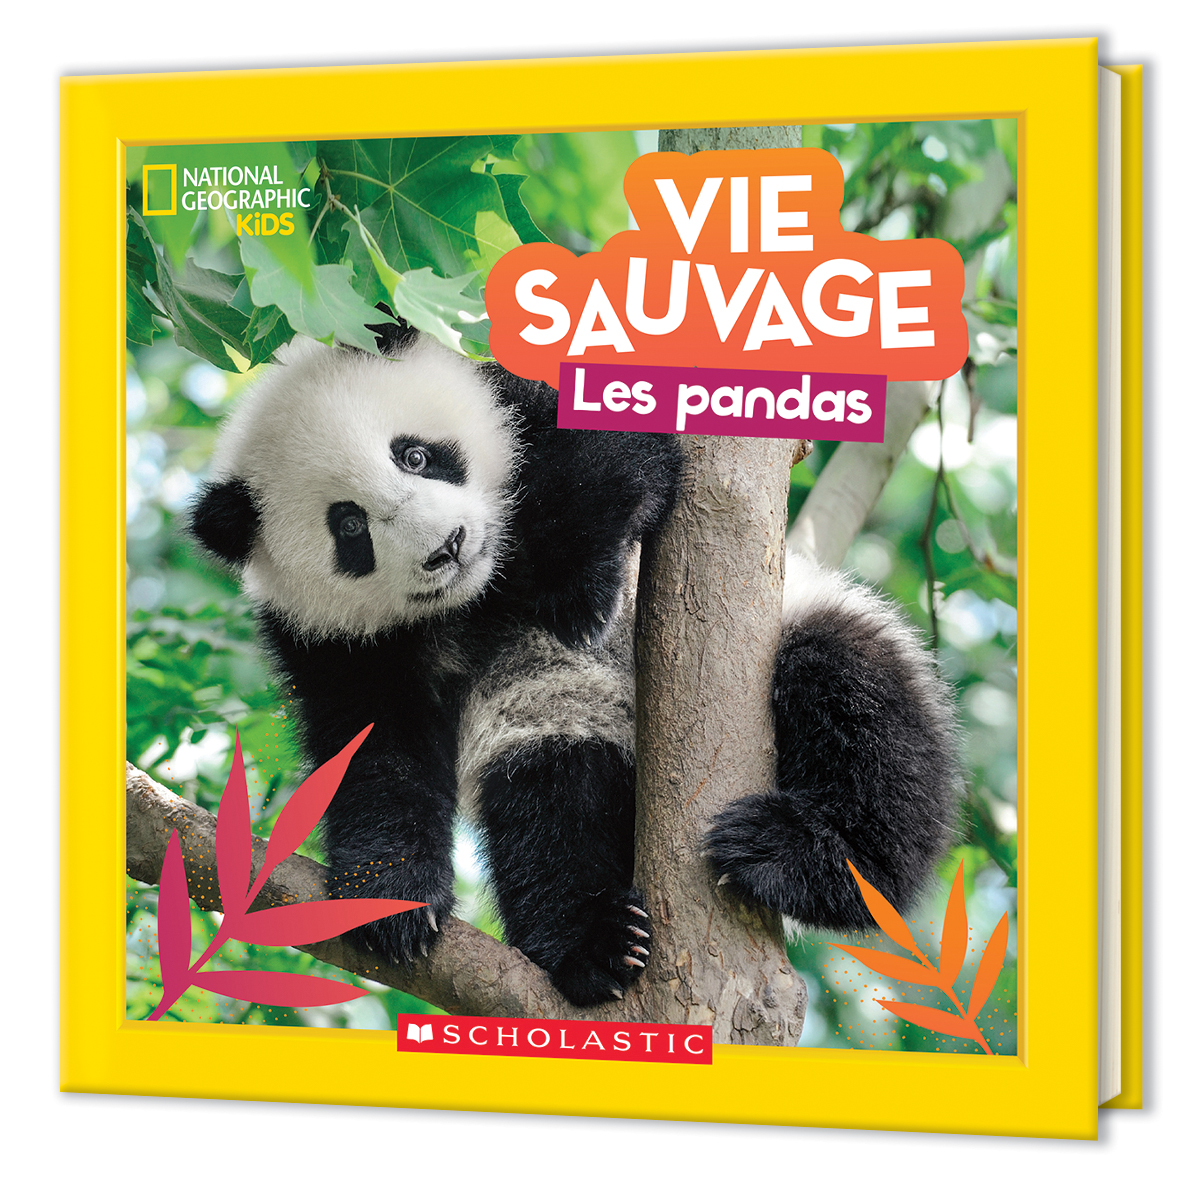  National Geographic Kids : Vie sauvage  - Les pandas 